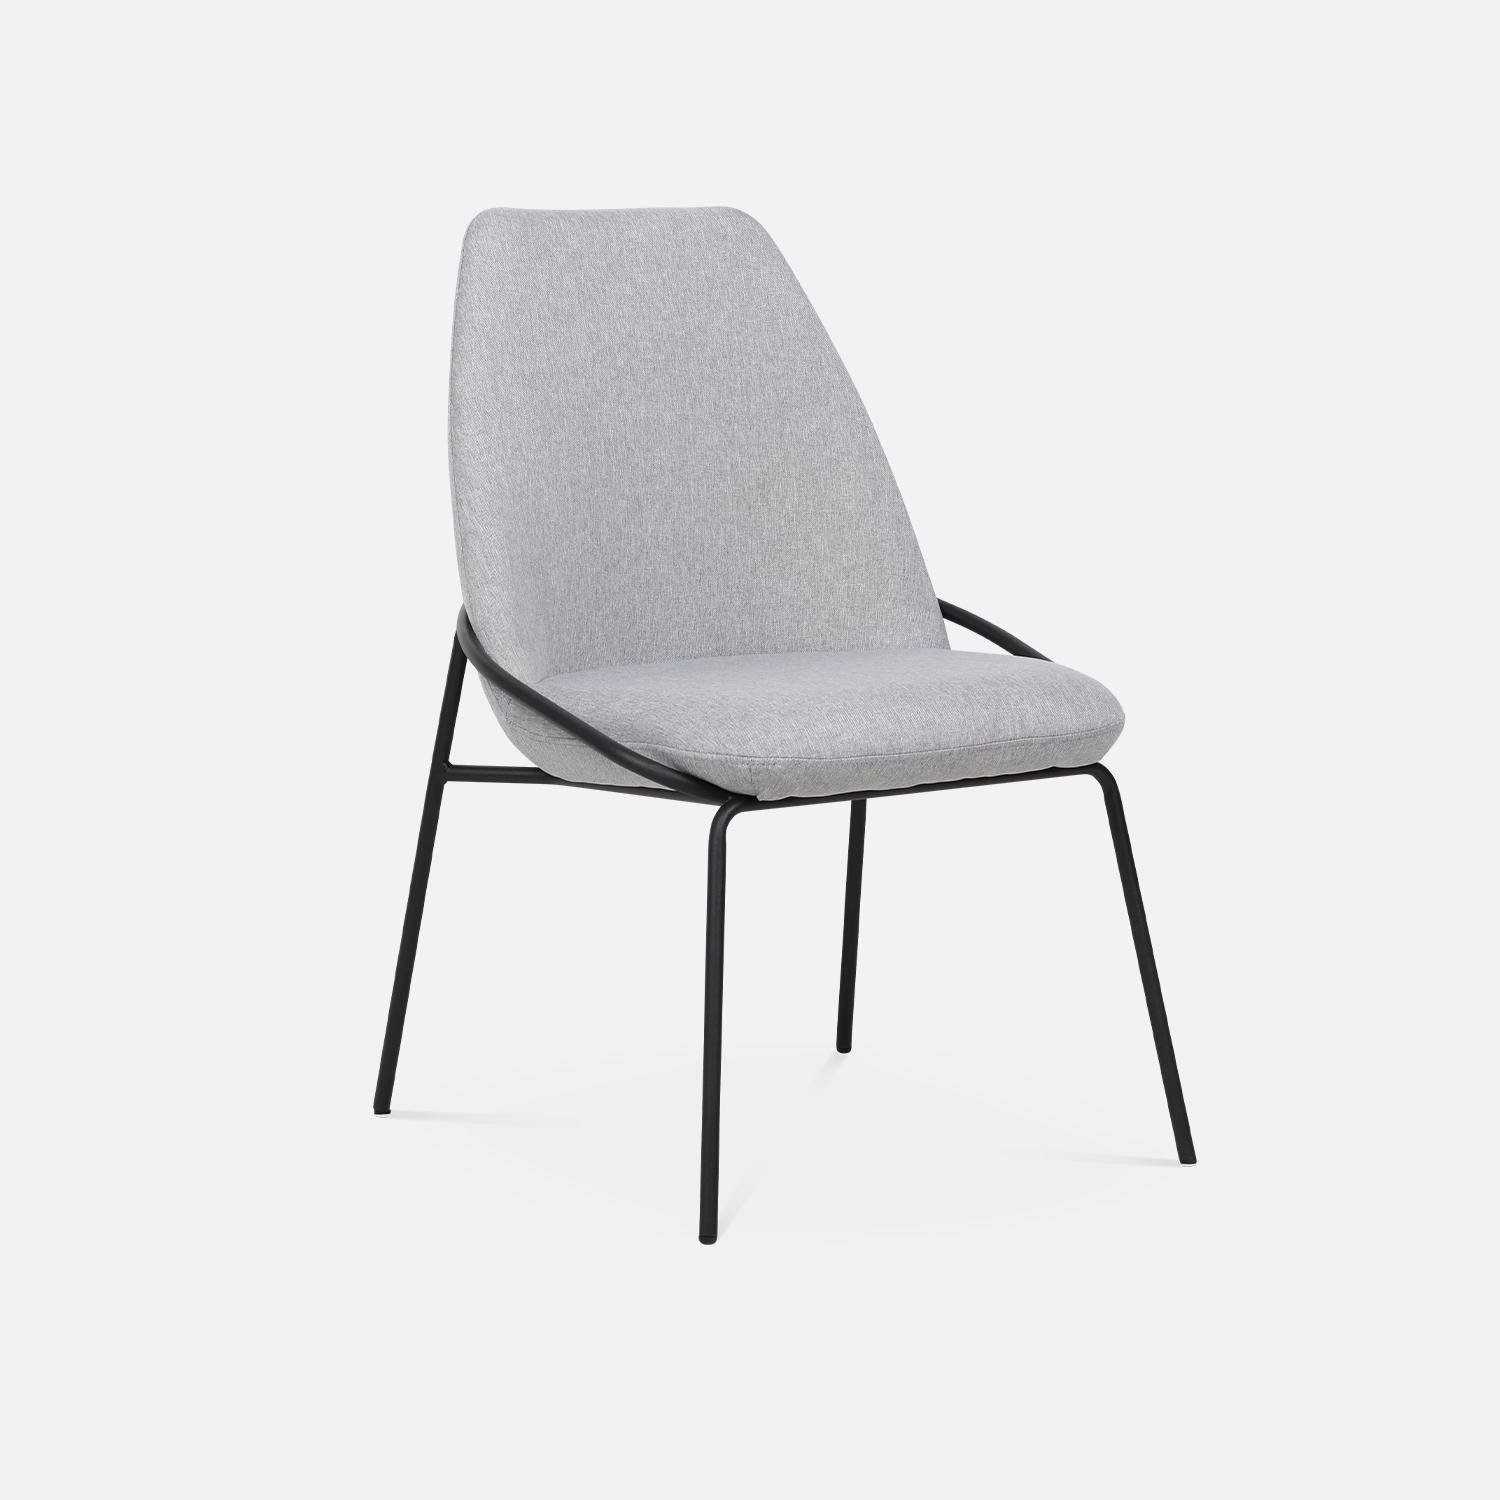 Chaise design - Lisbet - en tissu gris clair, 56,5 x 63 x 82,5cm Photo3